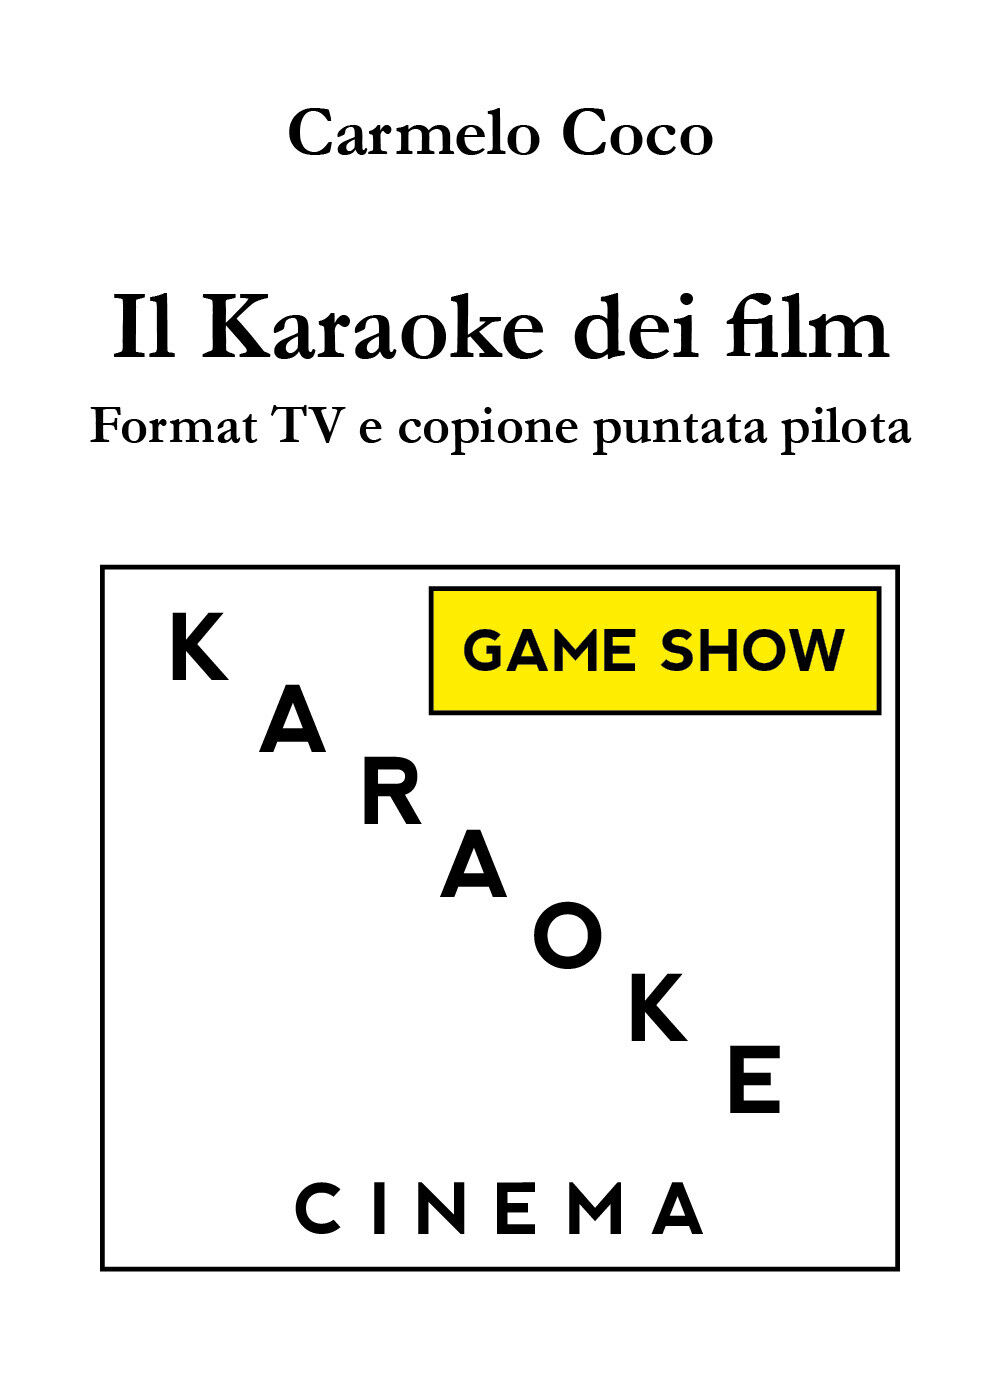 Il Karaoke dei film - Format TV e copione puntata pilota, di Carmelo Coco - ER libro usato